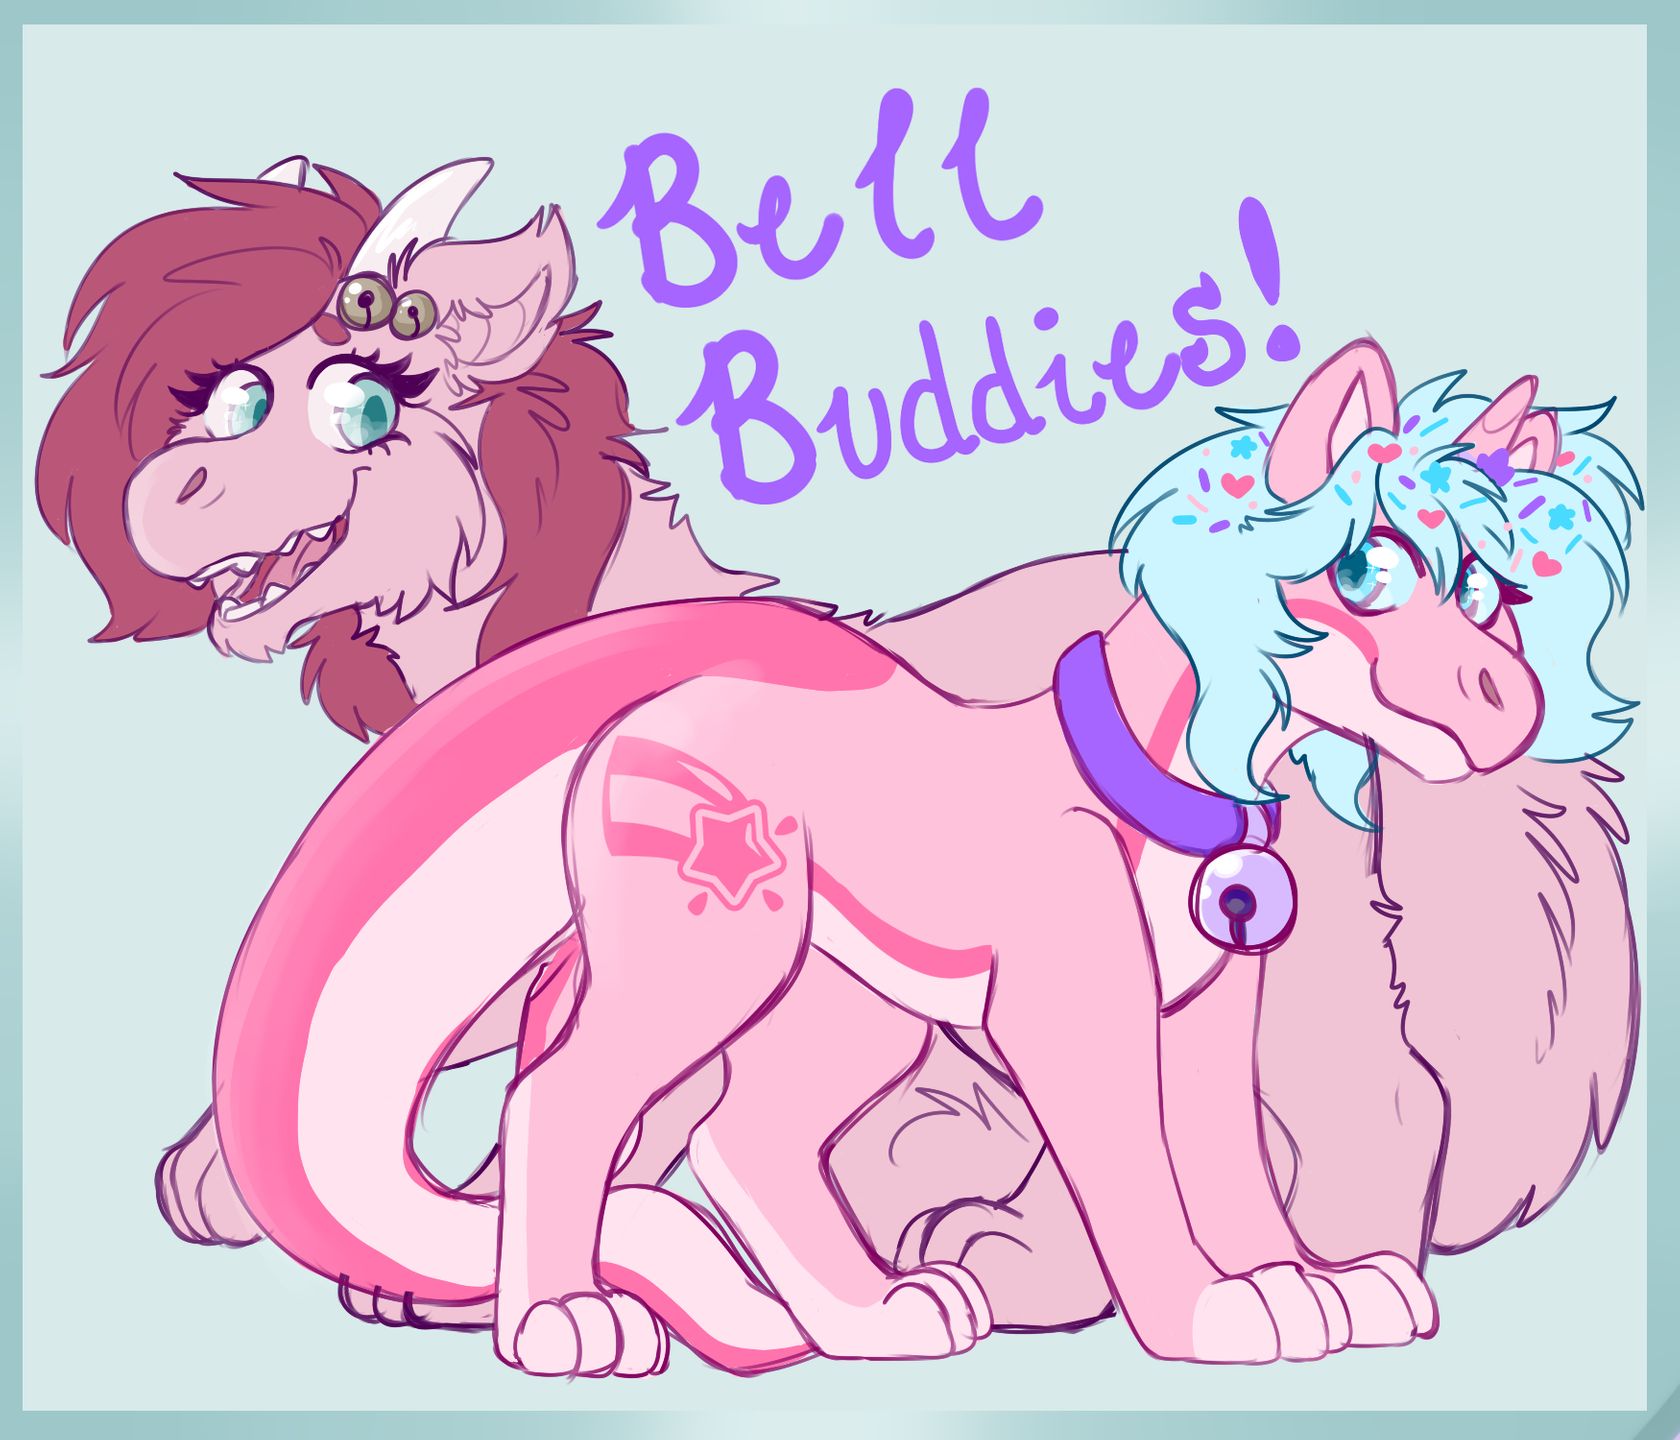 Bell Buddies